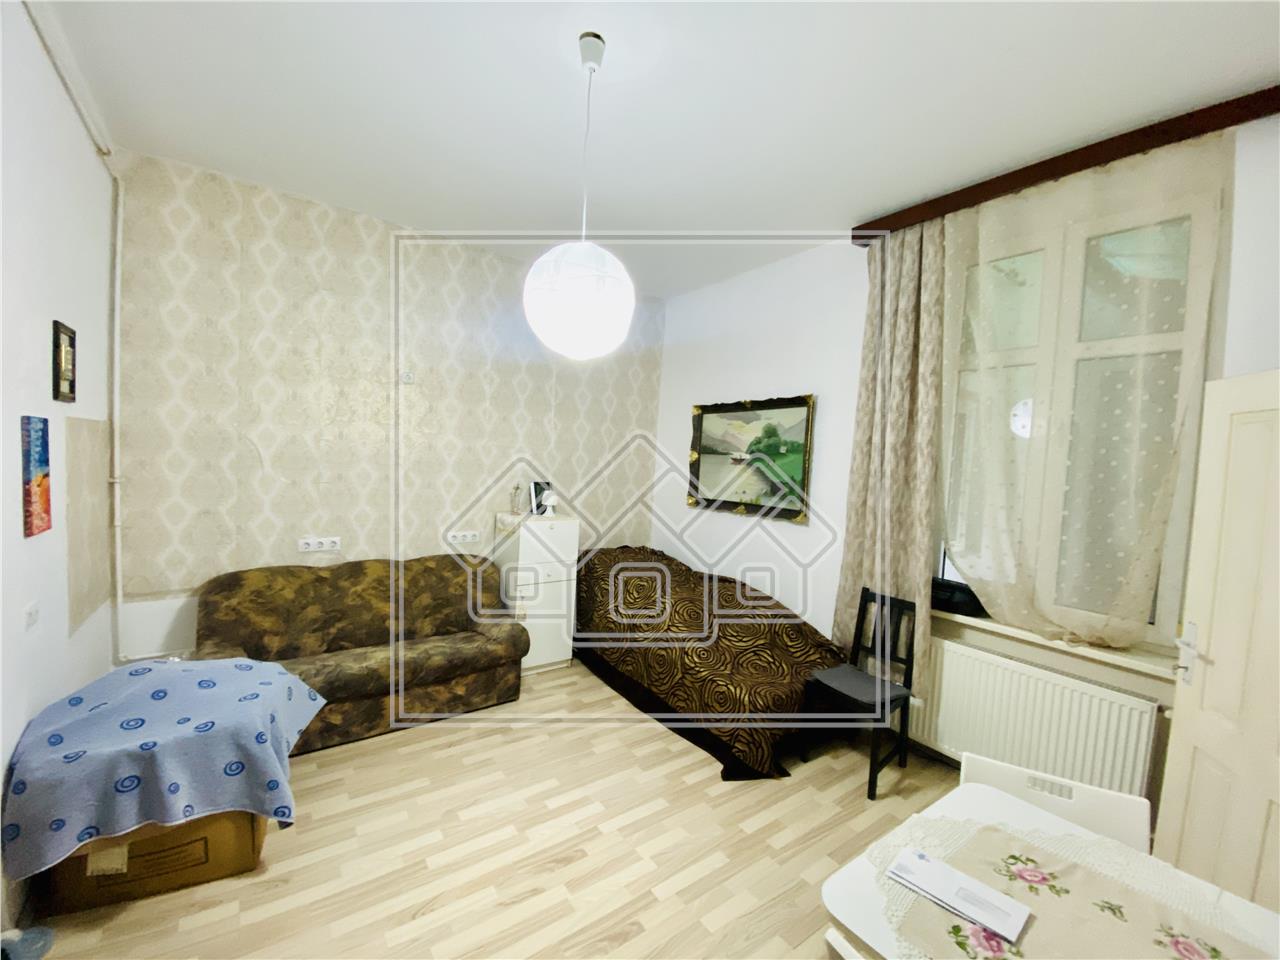 Apartament de vanzare in Sibiu -la casa- Zona Parcul Sub Arini